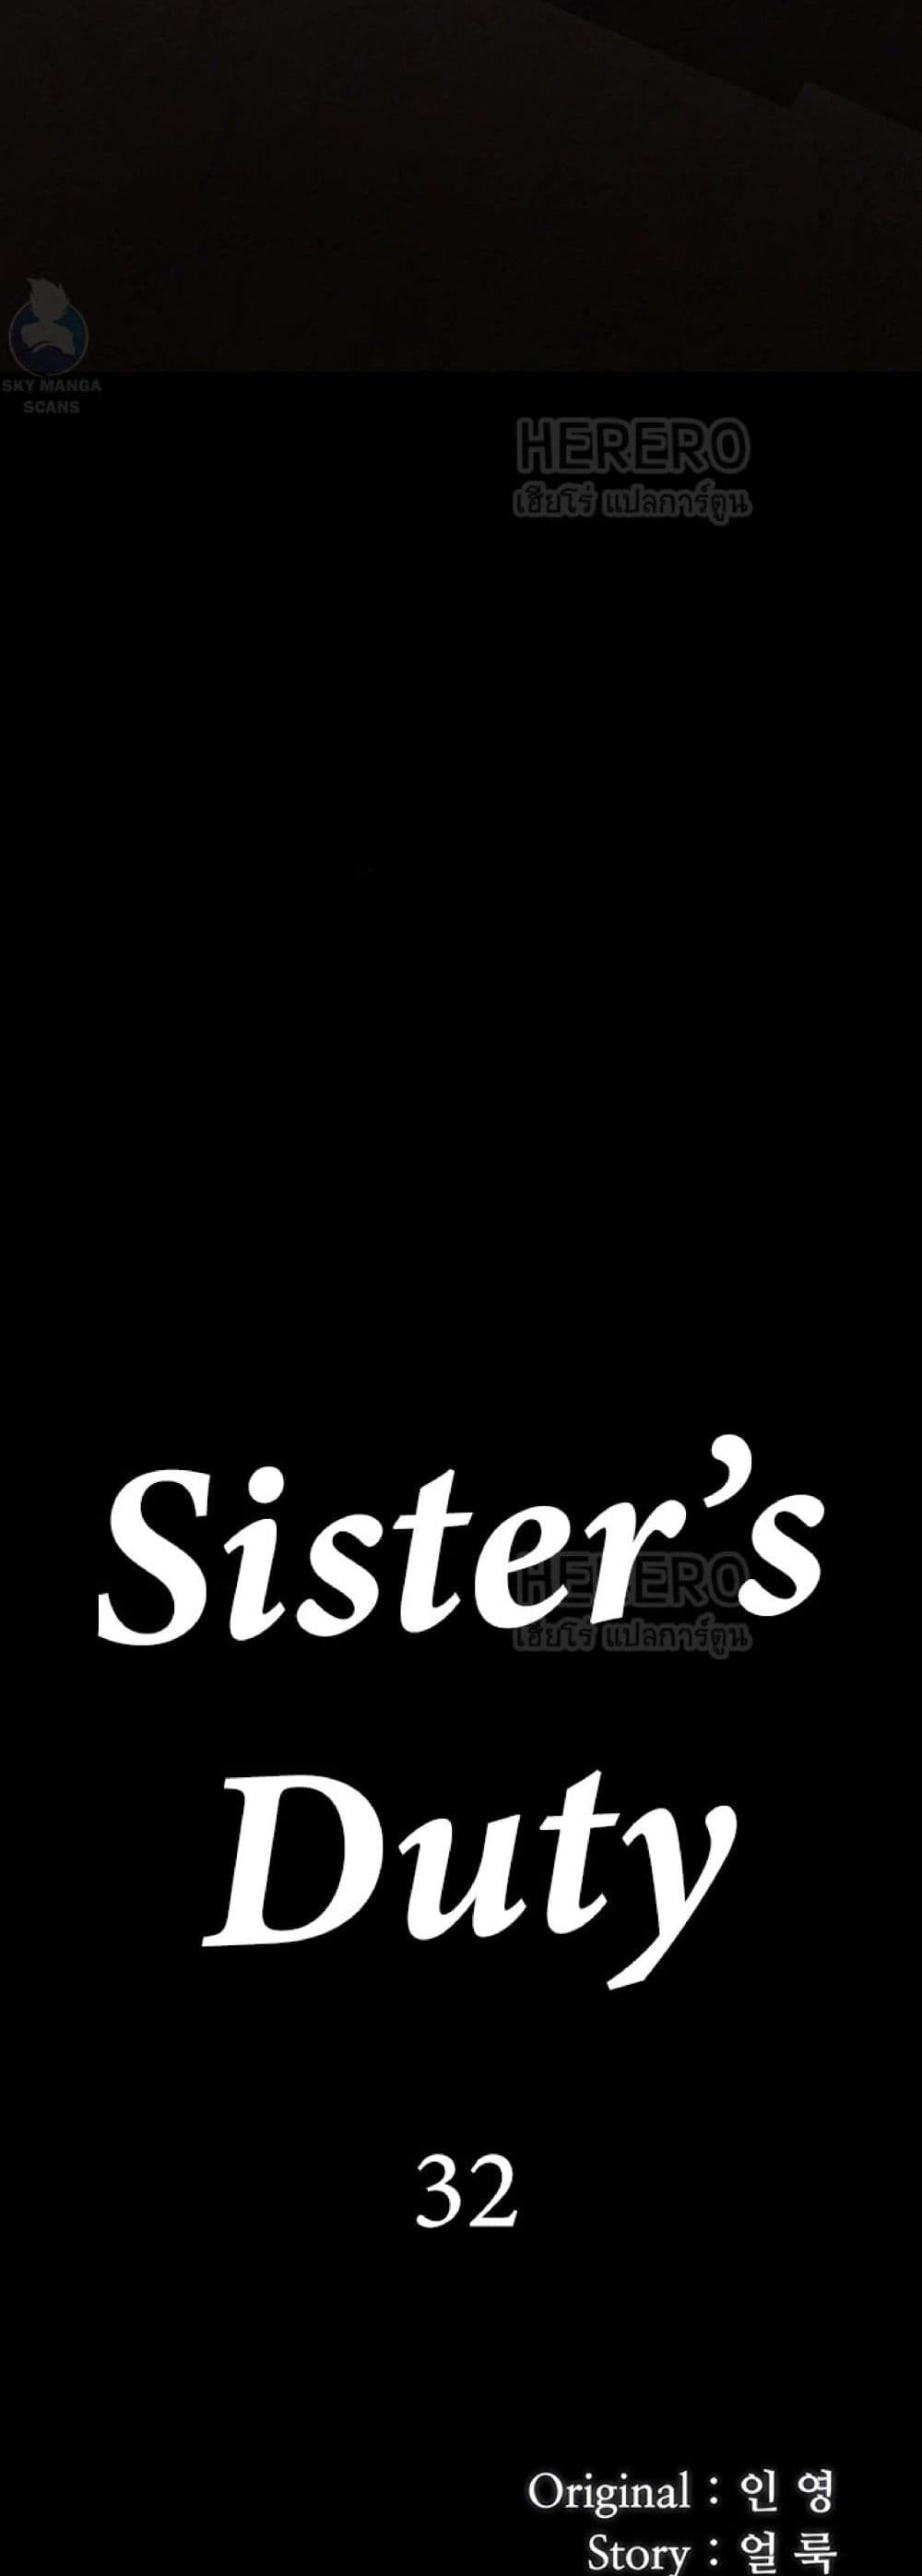 Sister's Duty 32-32